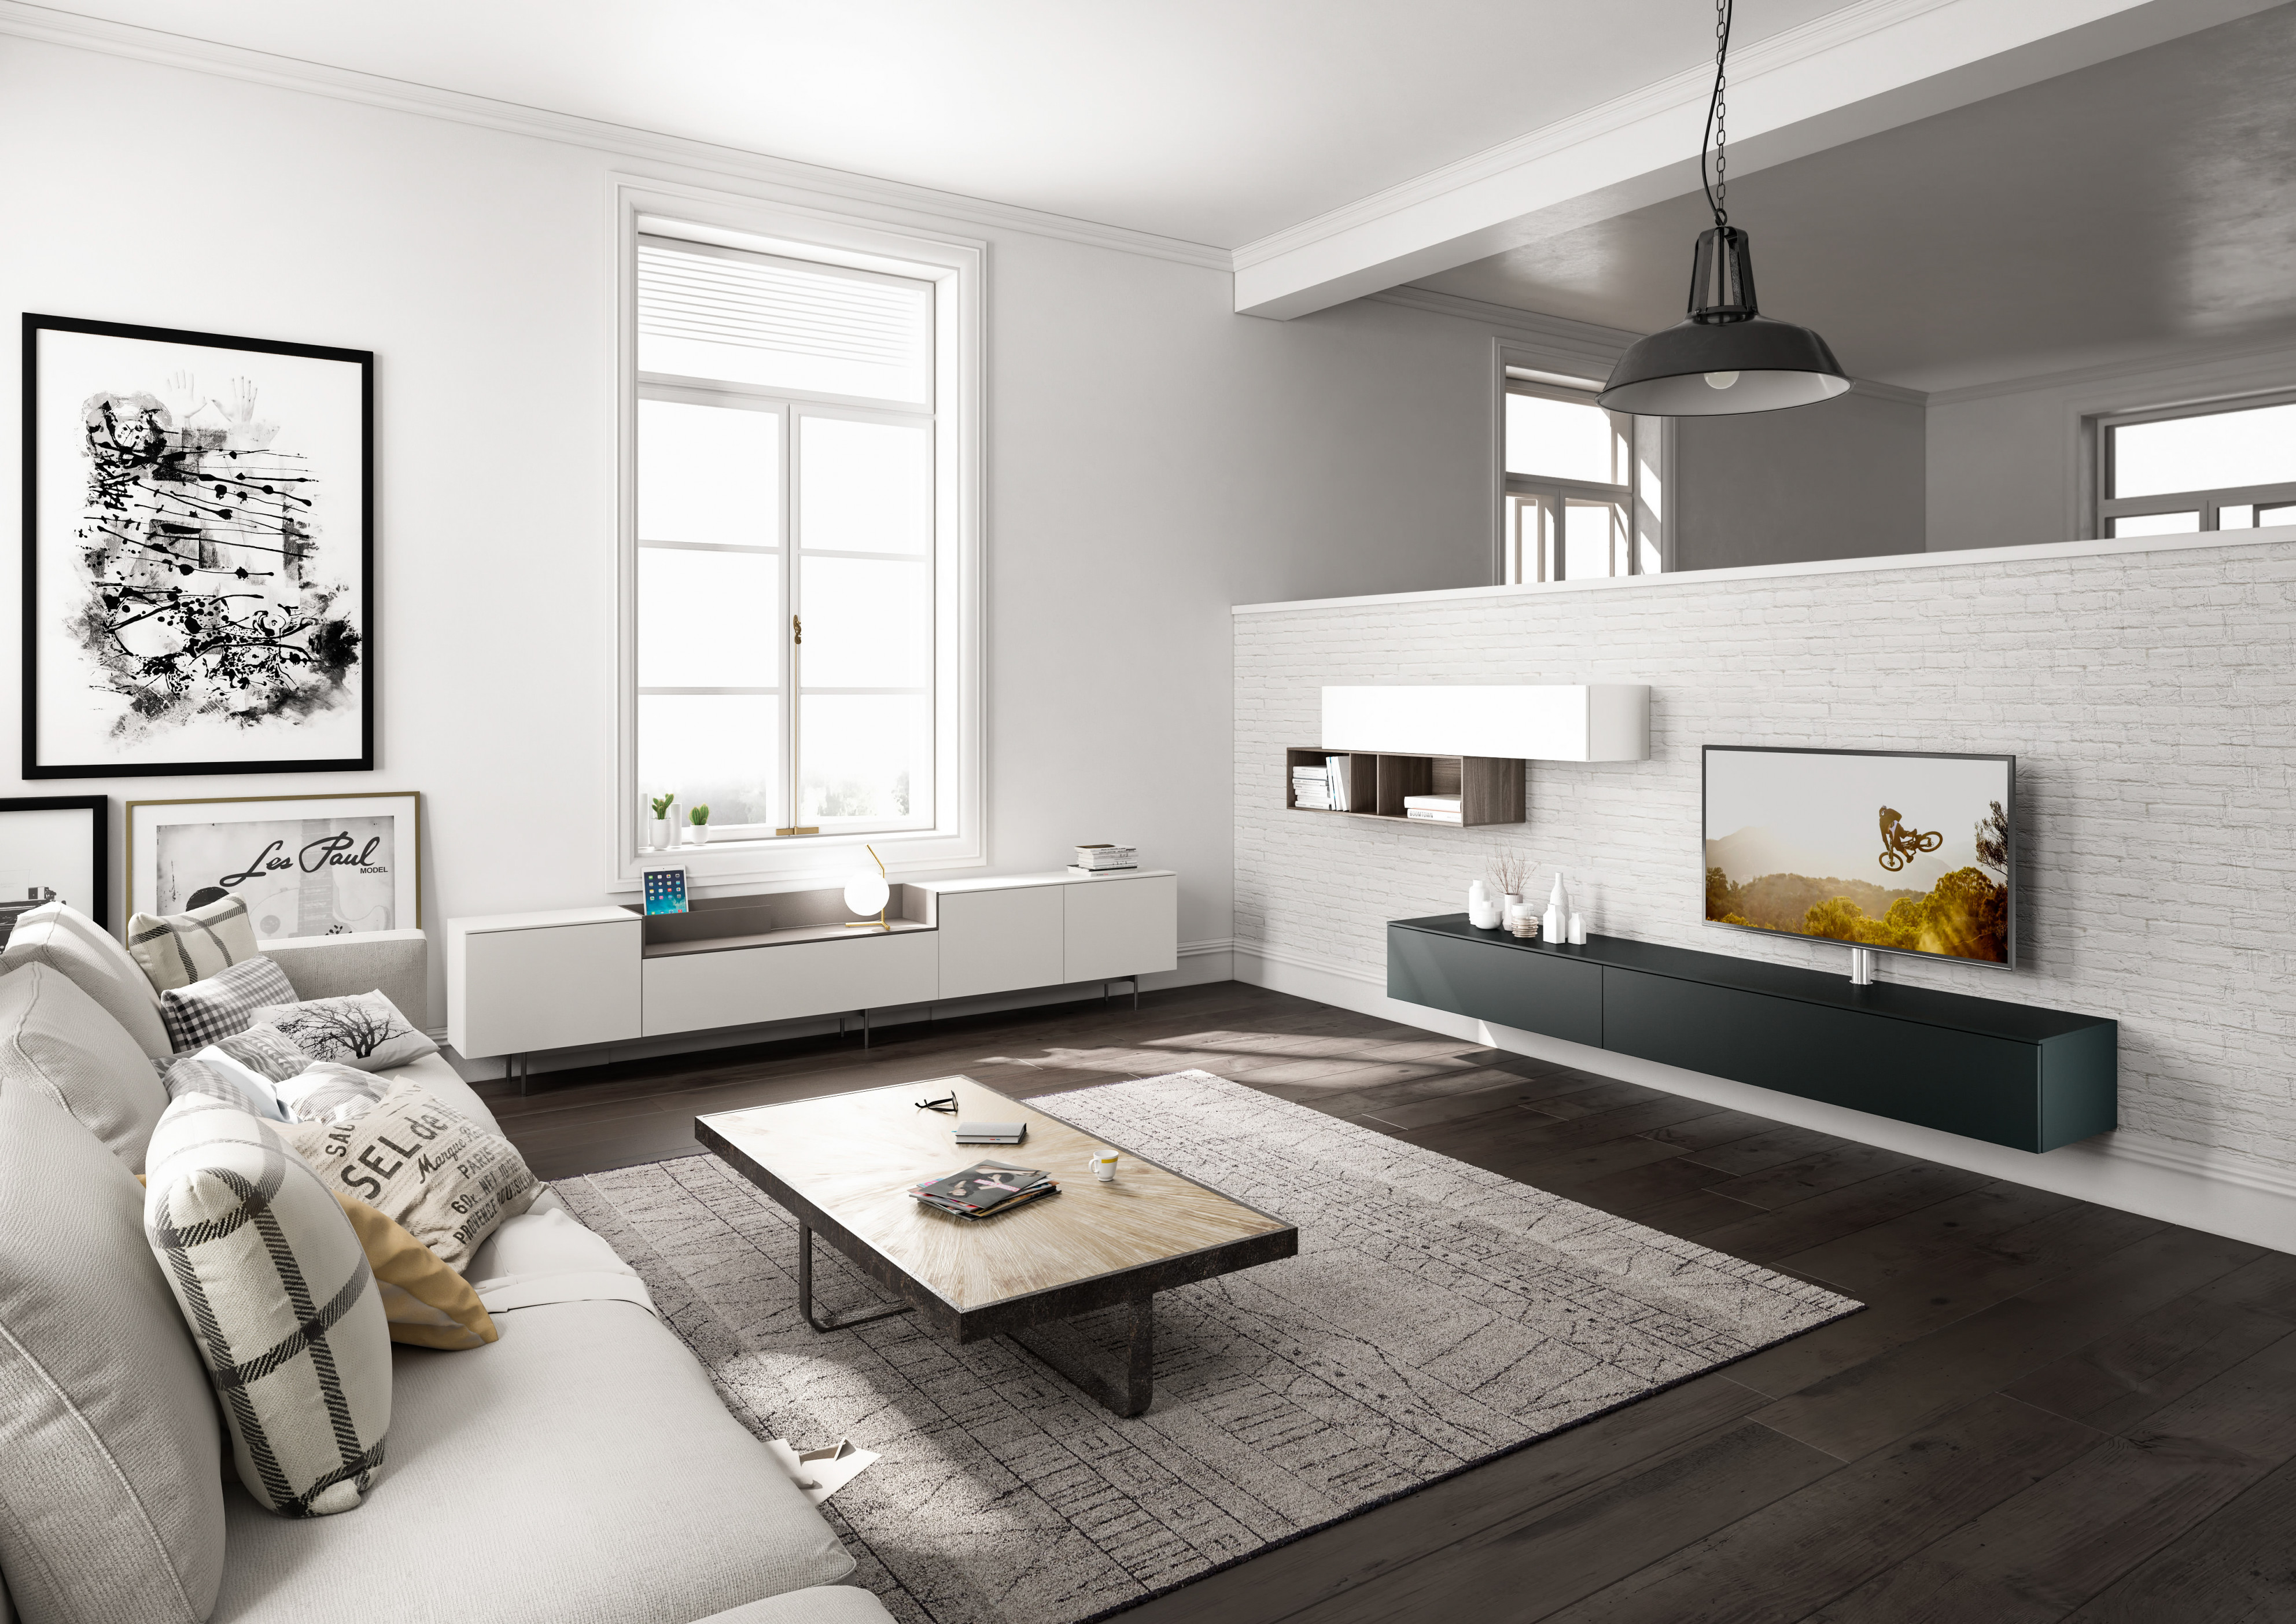 Wohnzimmergestaltung – Die Besten Ideen Tipps  Wohnbeispiele von Wohnzimmer Länglich Einrichten Bild